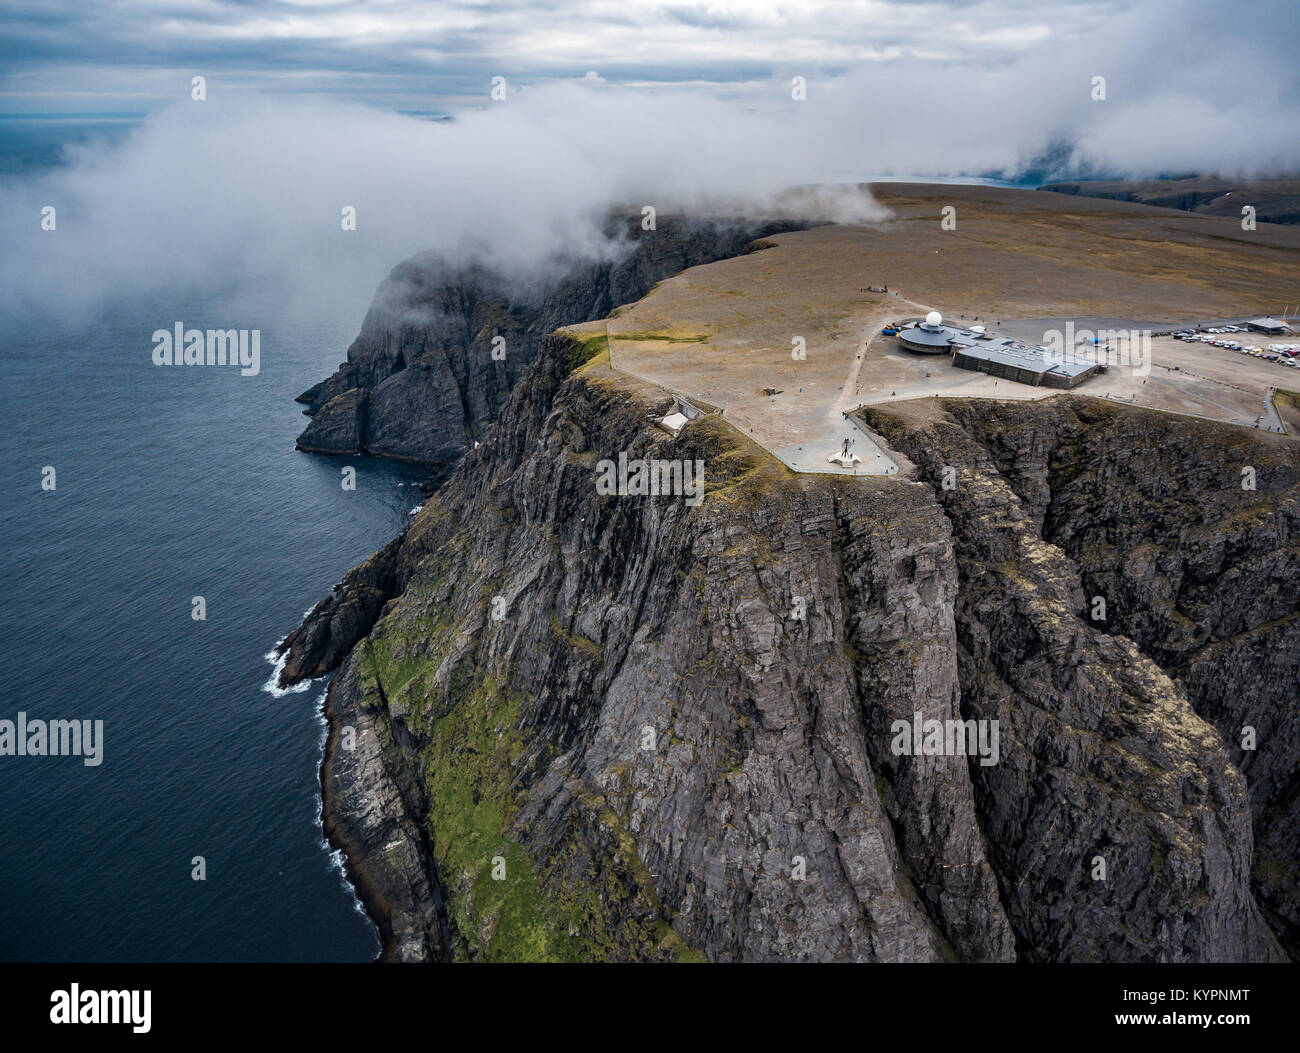 Mare di Barents costa Nord Cape (Nordkapp) nel nord della Norvegia la fotografia aerea. Foto Stock